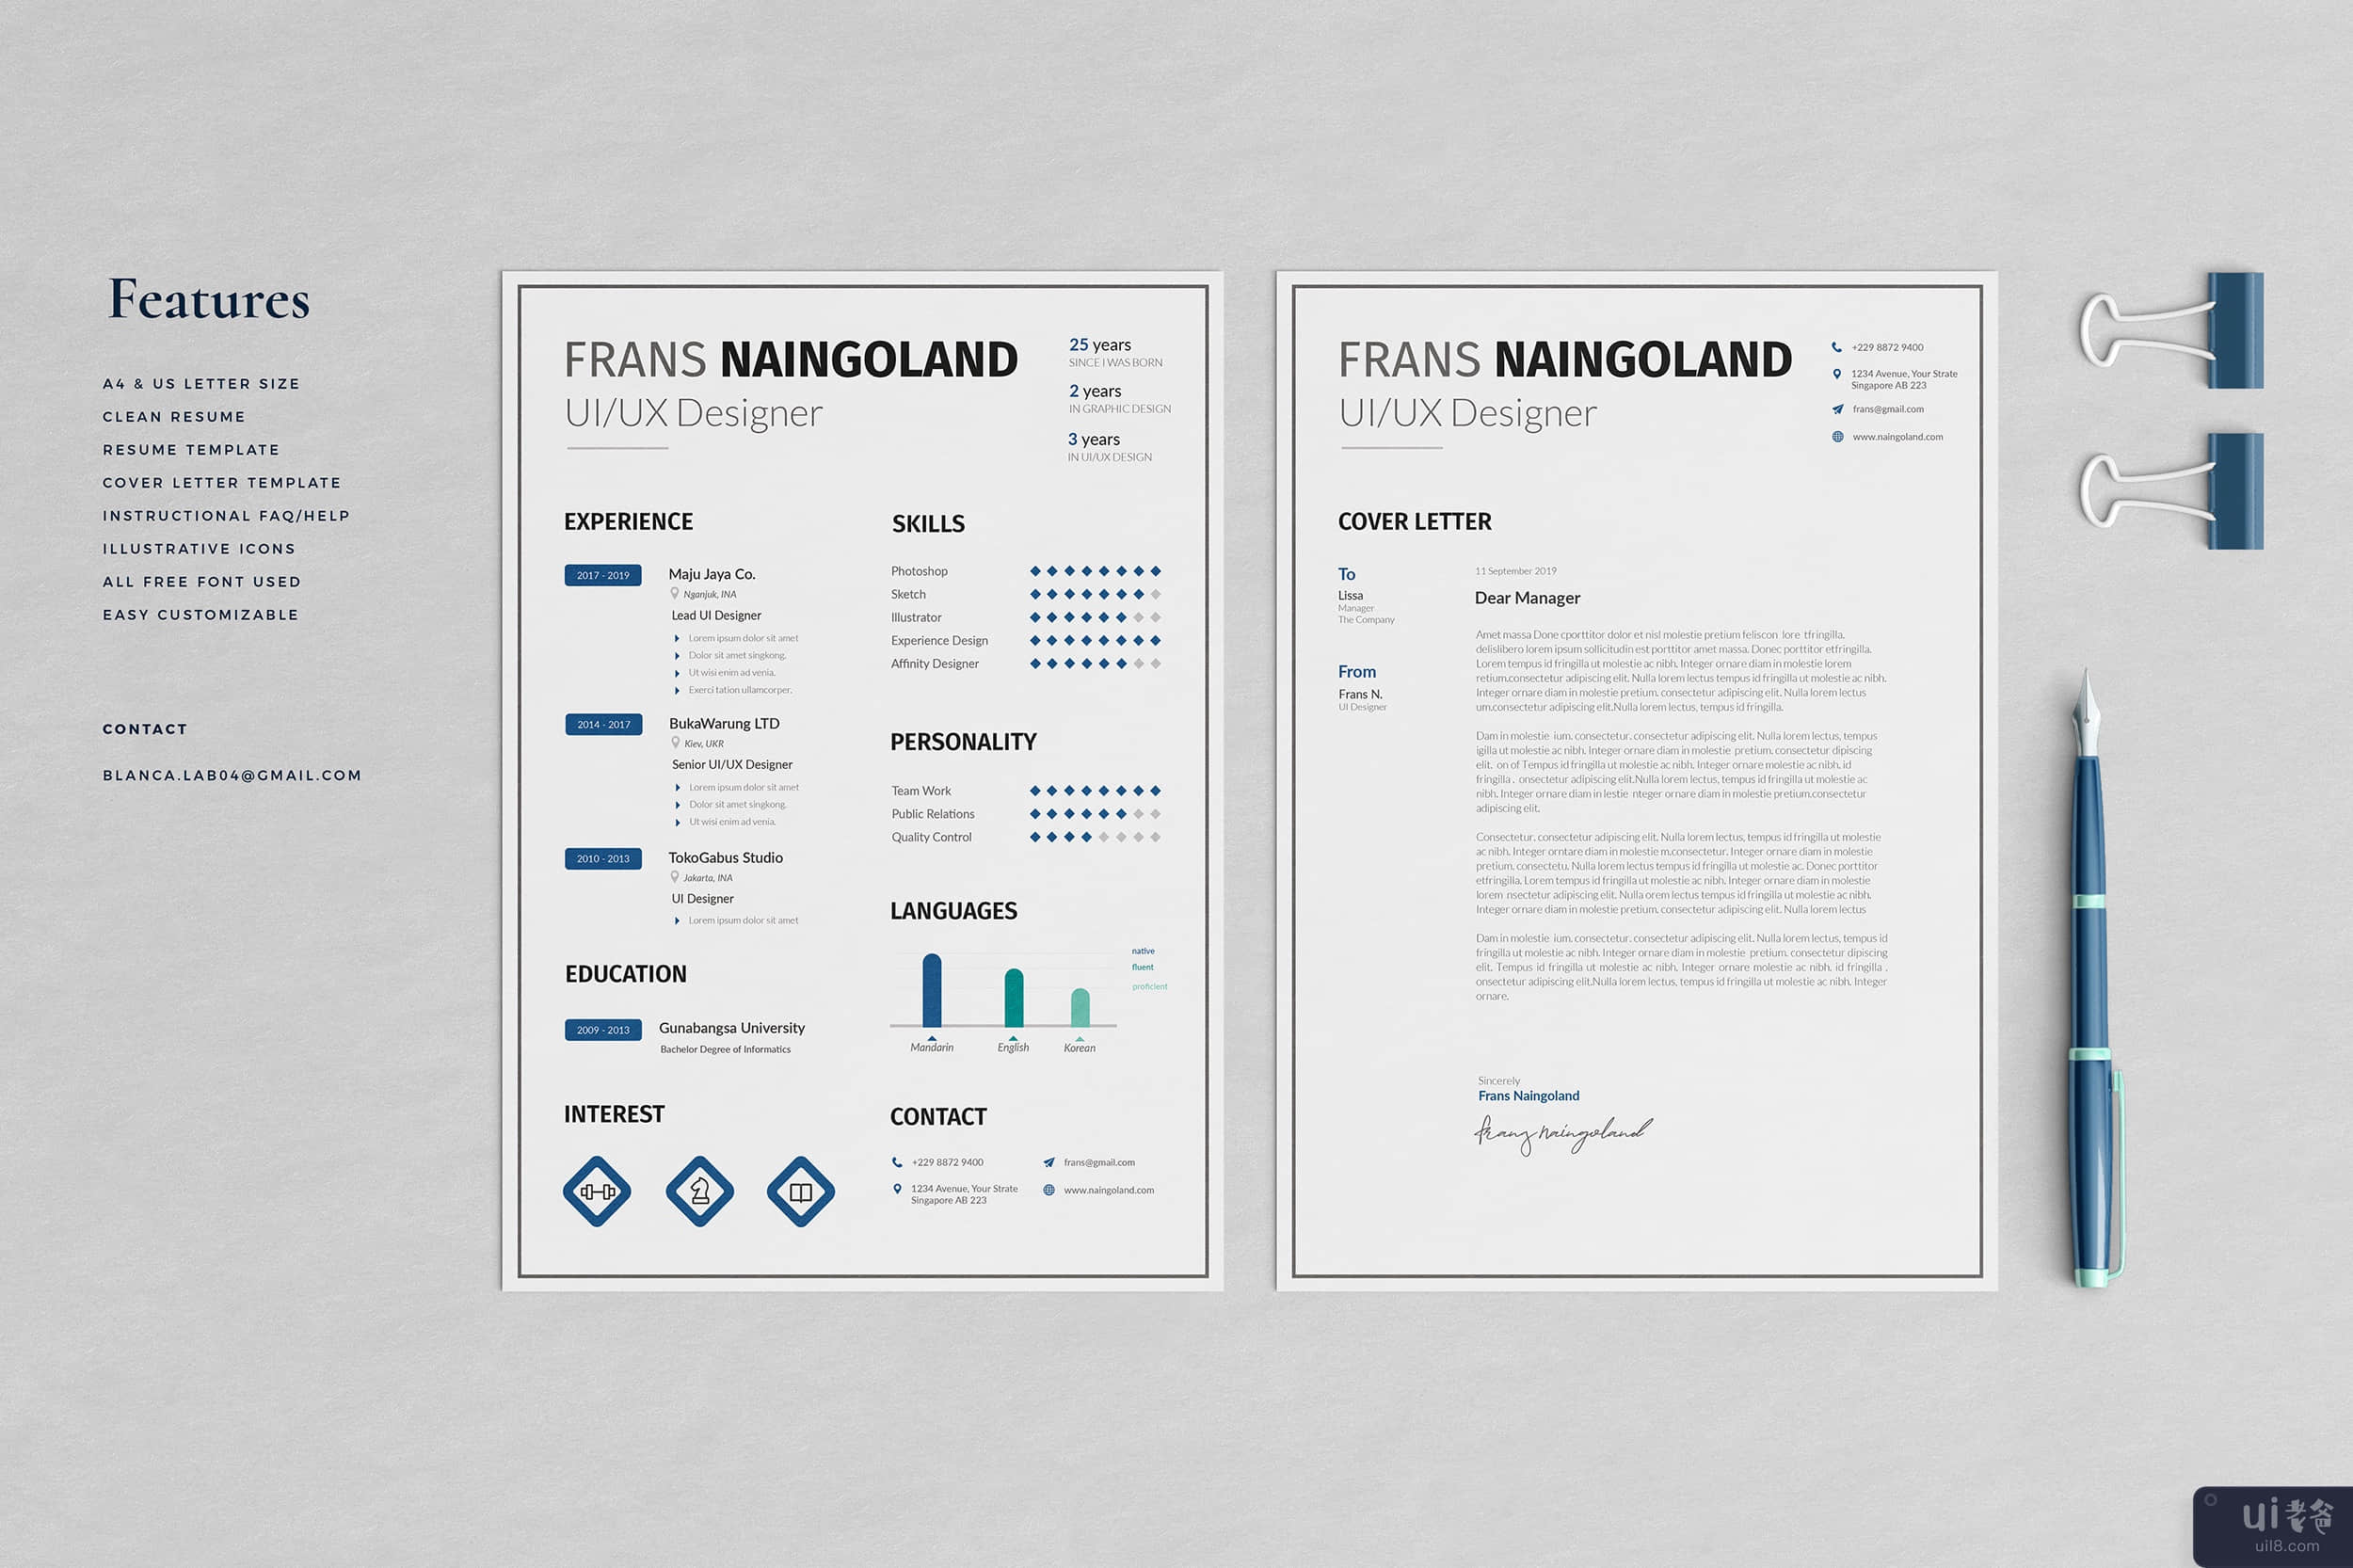 创意 Naingoland 简历模板(Creative Naingoland Resume Template)插图2